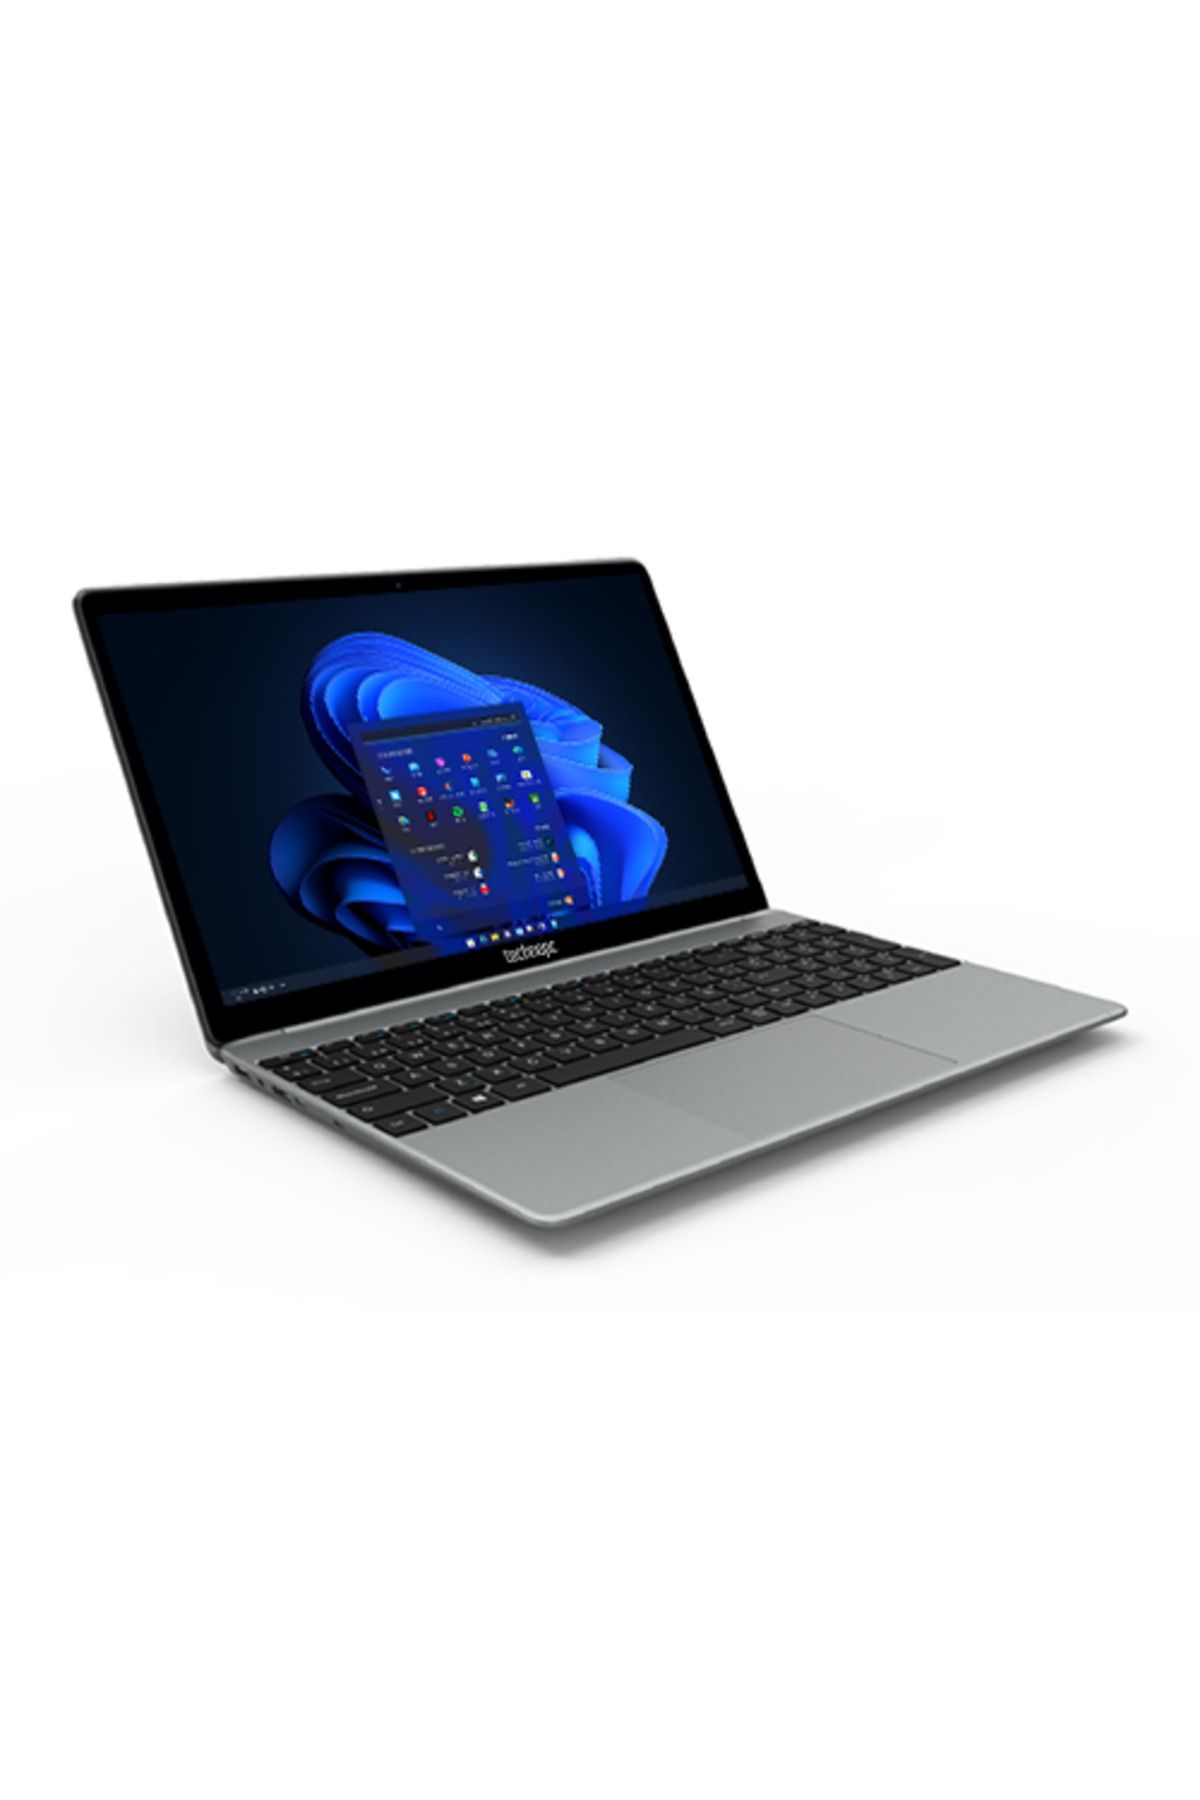 Technopc BlueEra Laptop N19 15.6'' FHD Intel i5-1135G7 16GB DDR4 512GB SSD Freedos Notebook